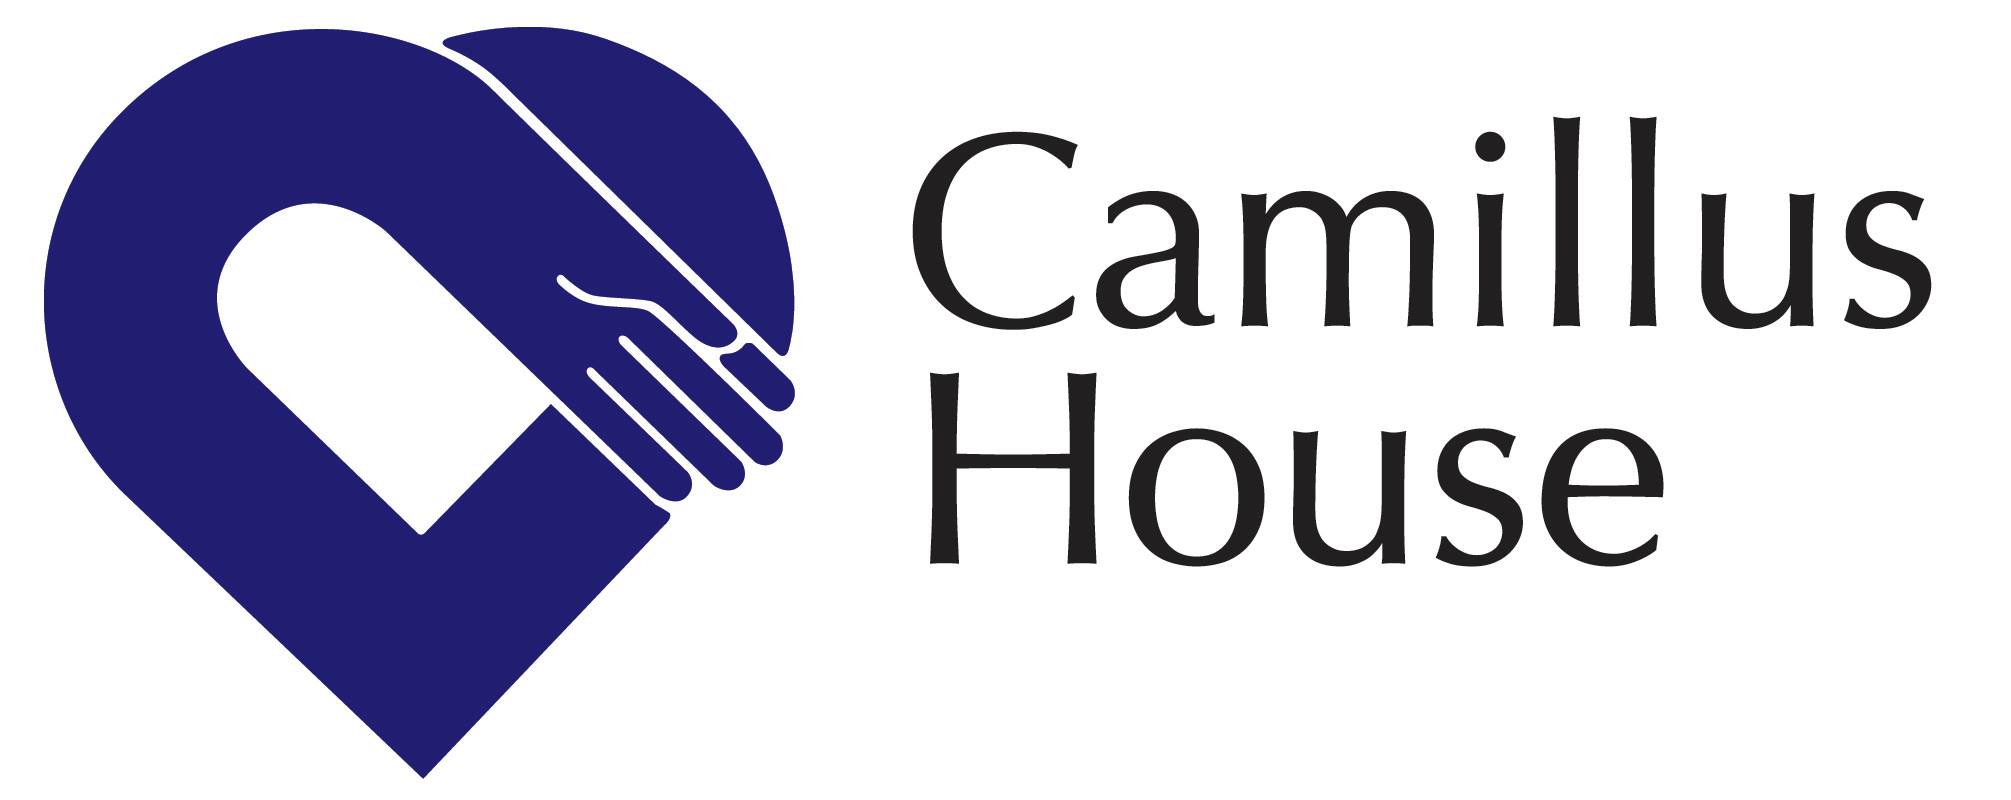 Camillus House